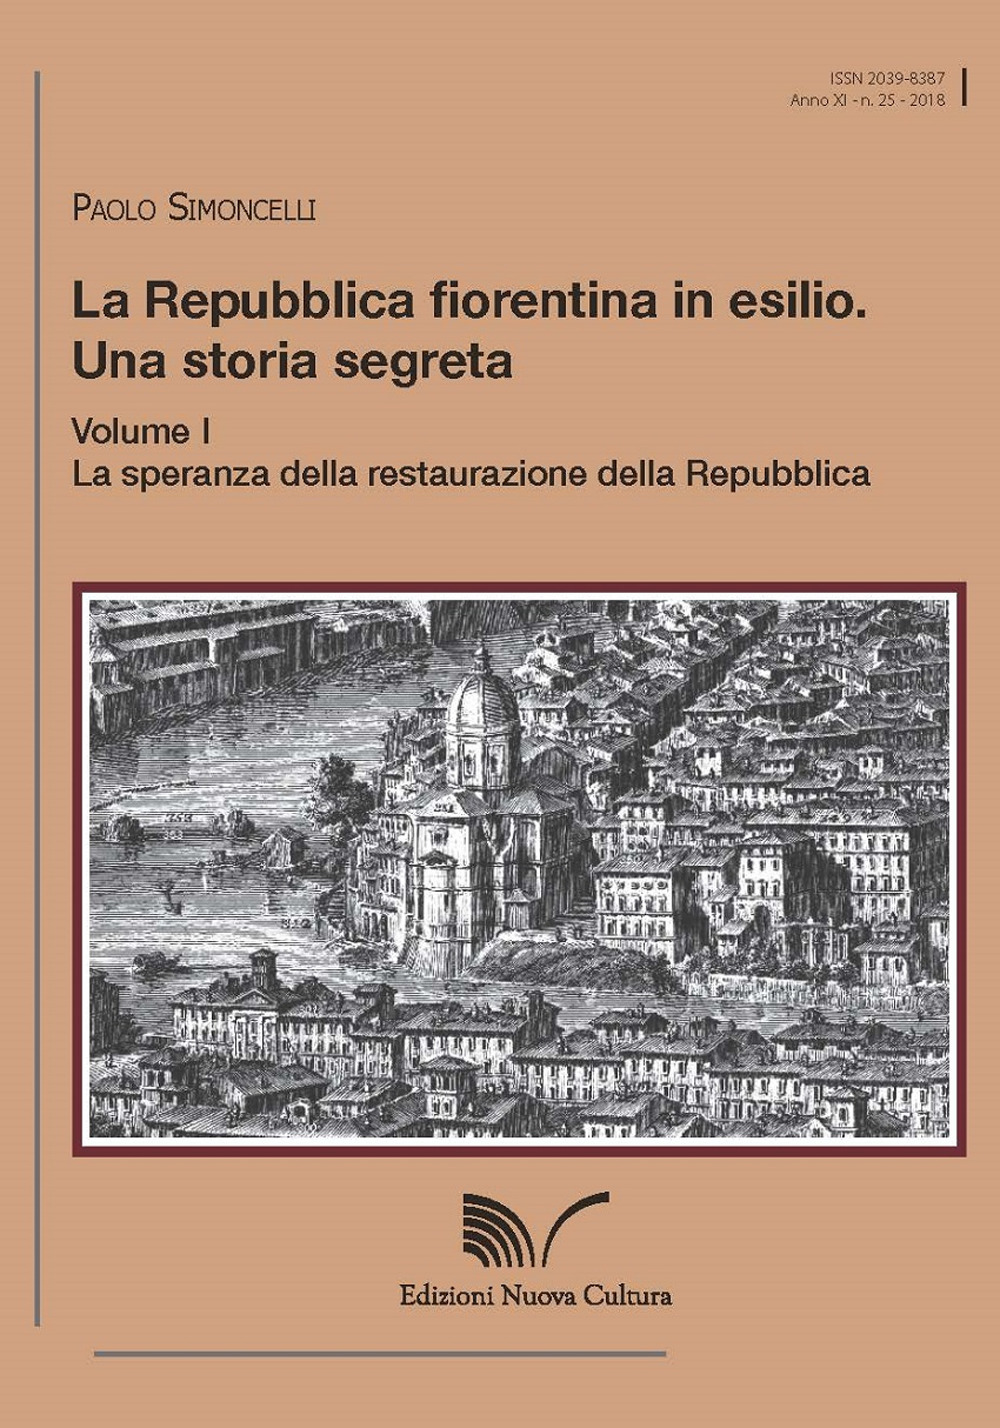 La Repubblica fiorentina in esilio. Una storia segreta. Vol. 1: La speranza della restaurazione della Repubblica